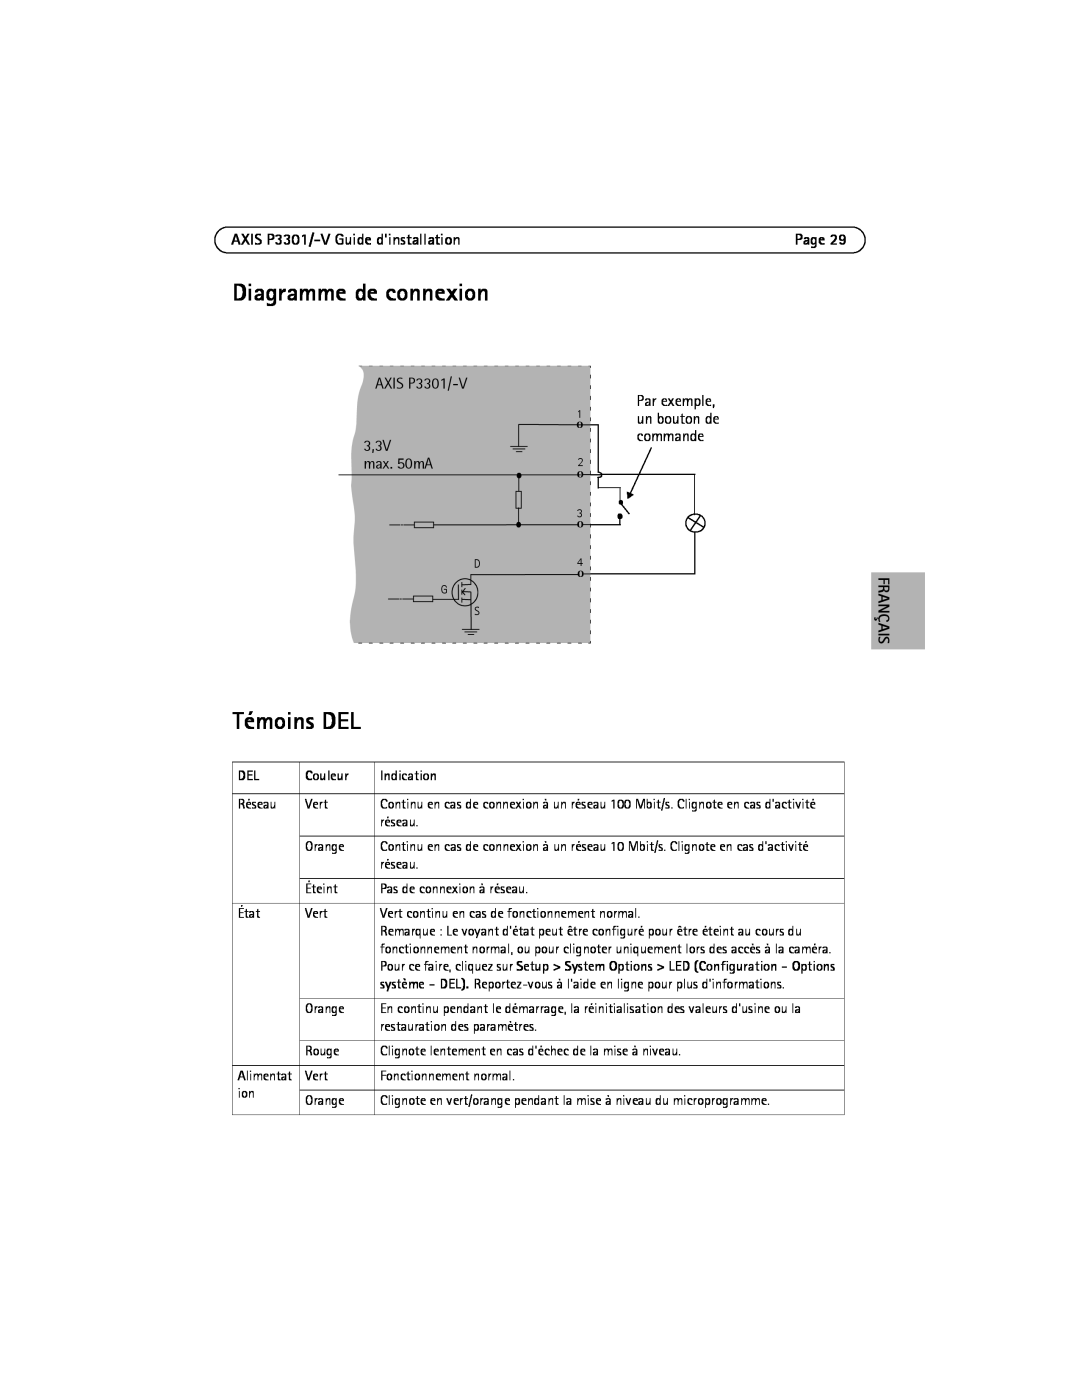 Axis Communications manual Diagramme de connexion, Témoins DEL, AXIS P3301/-V Guide dinstallation, Français, Couleur 